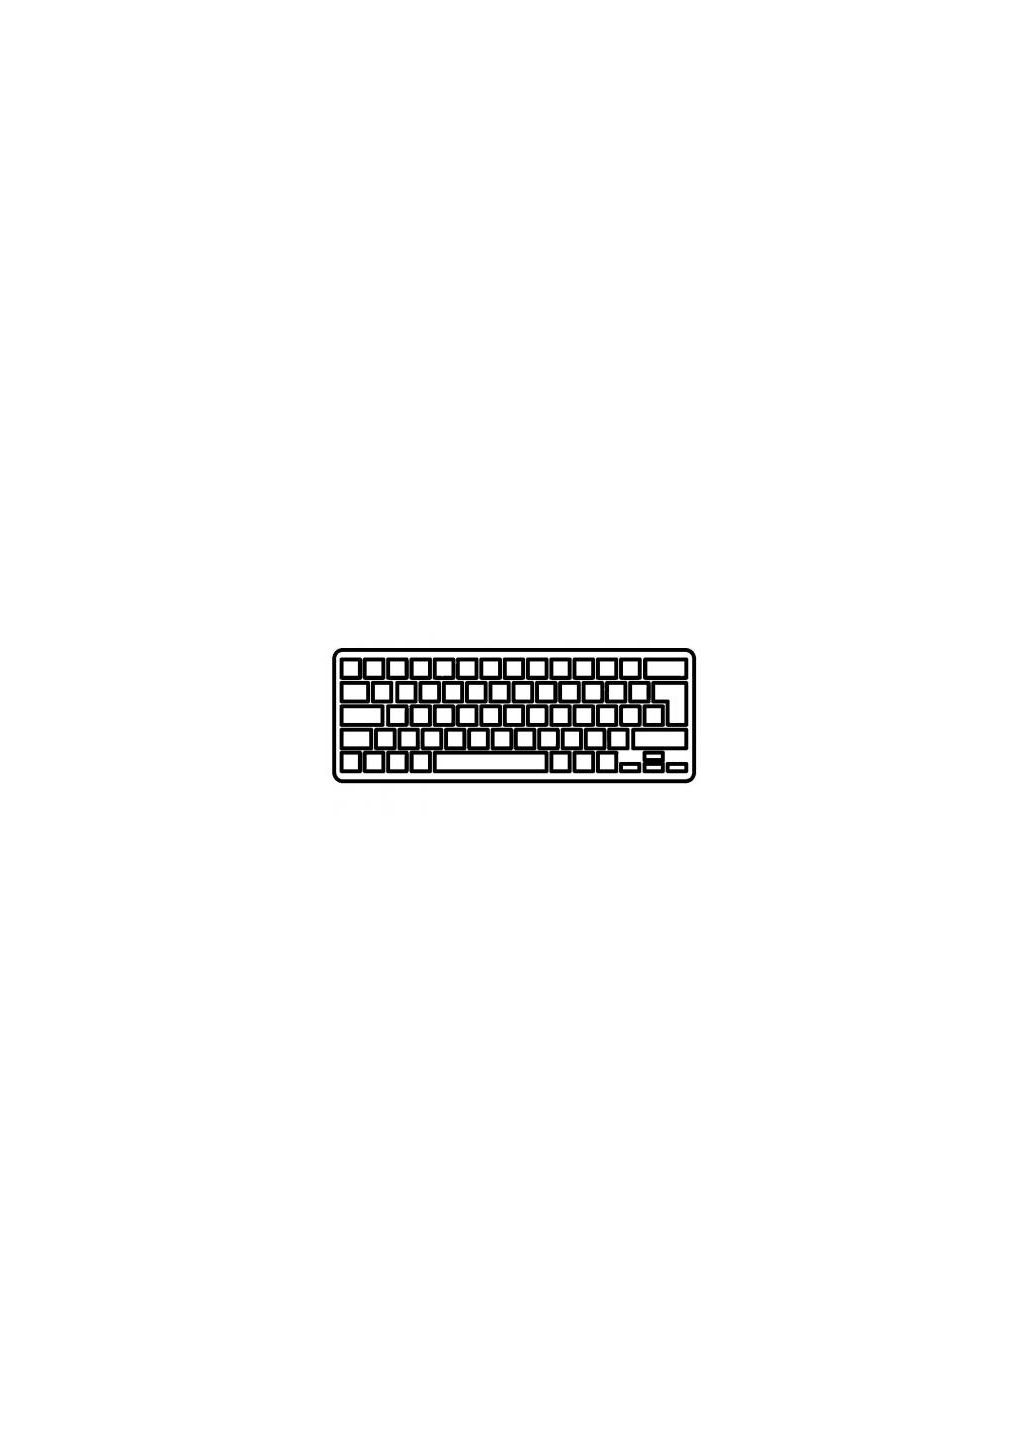 Клавиатура ноутбука Aspire 3830T с подсветкой/без рамки UA (A43633) Acer aspire 3830t черная с подсветкой/без рамки ua (276707543)